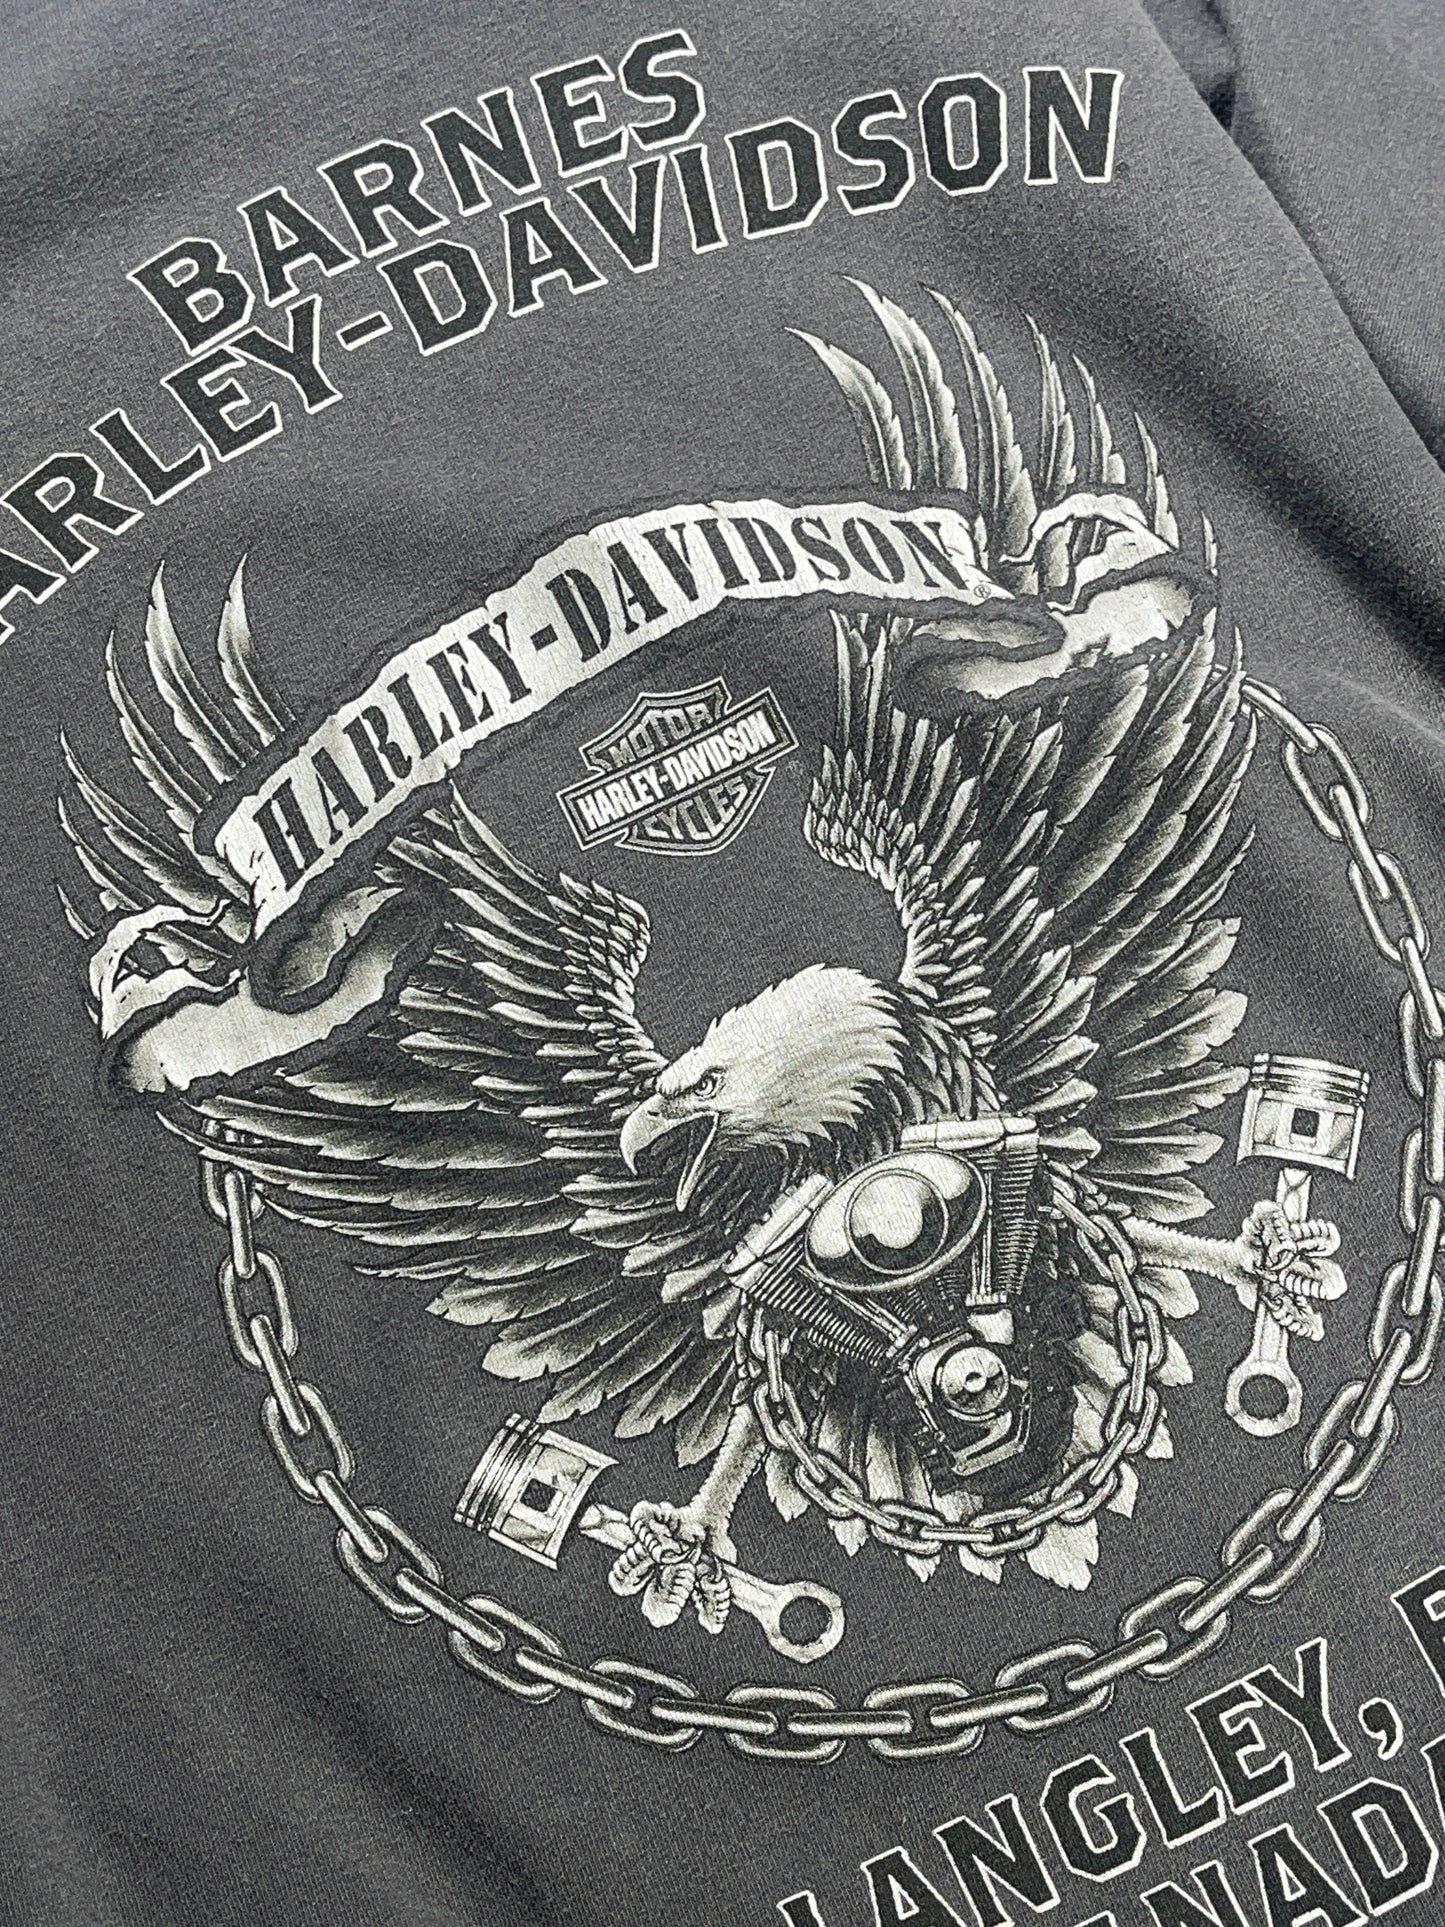 Vintage Harley Davidson T-Shirt Langley